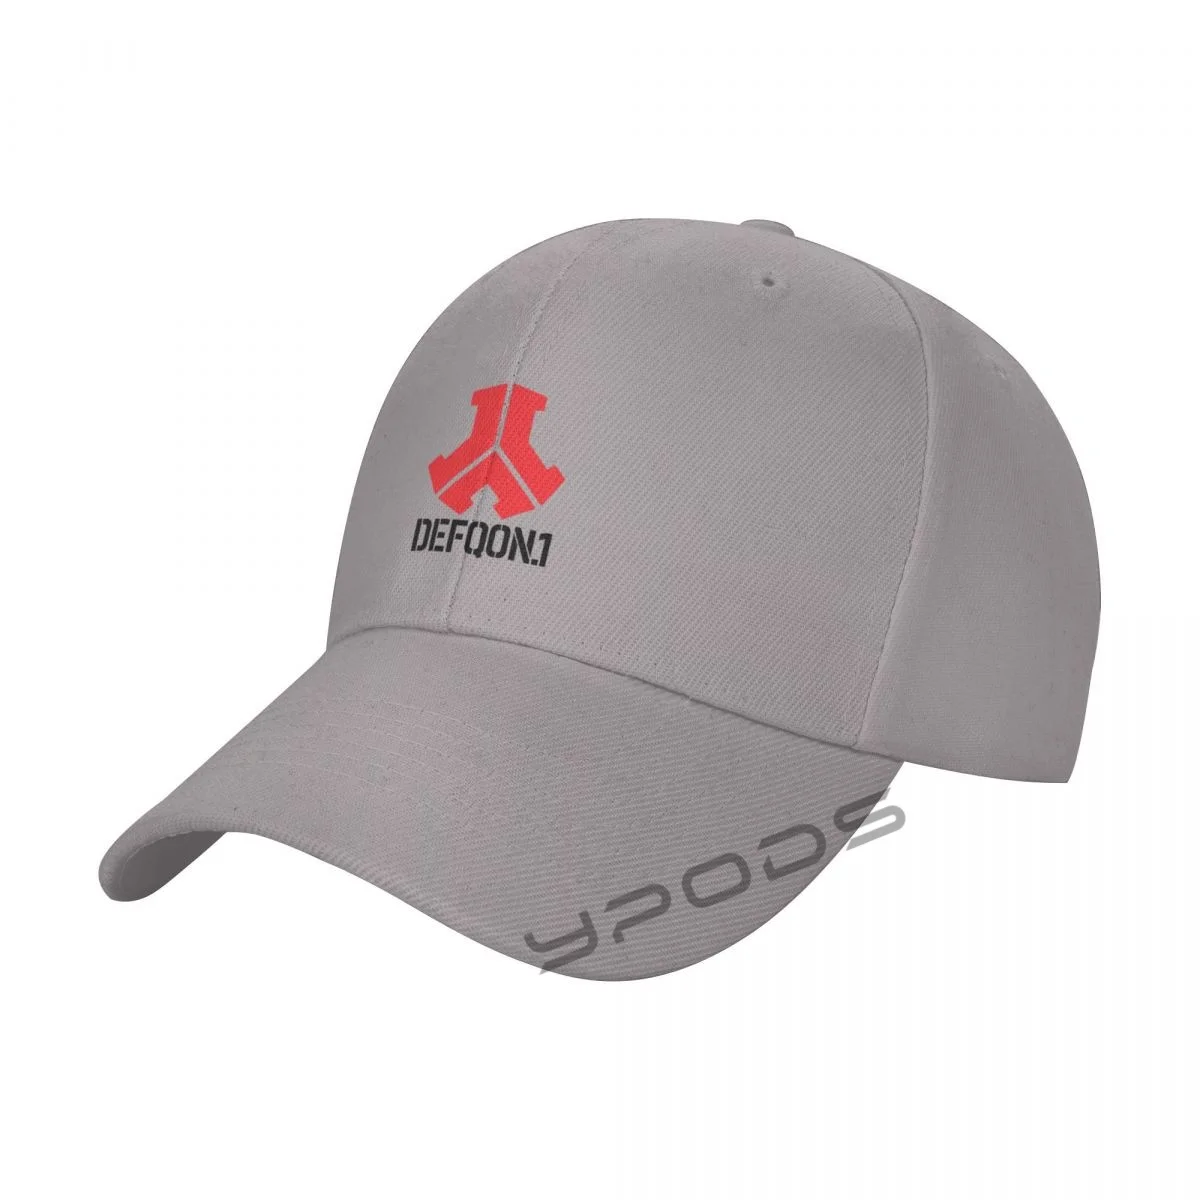 

Defqon New Baseball Caps for Men Cap Women Hat Snapback Casual Cap Casquette hats